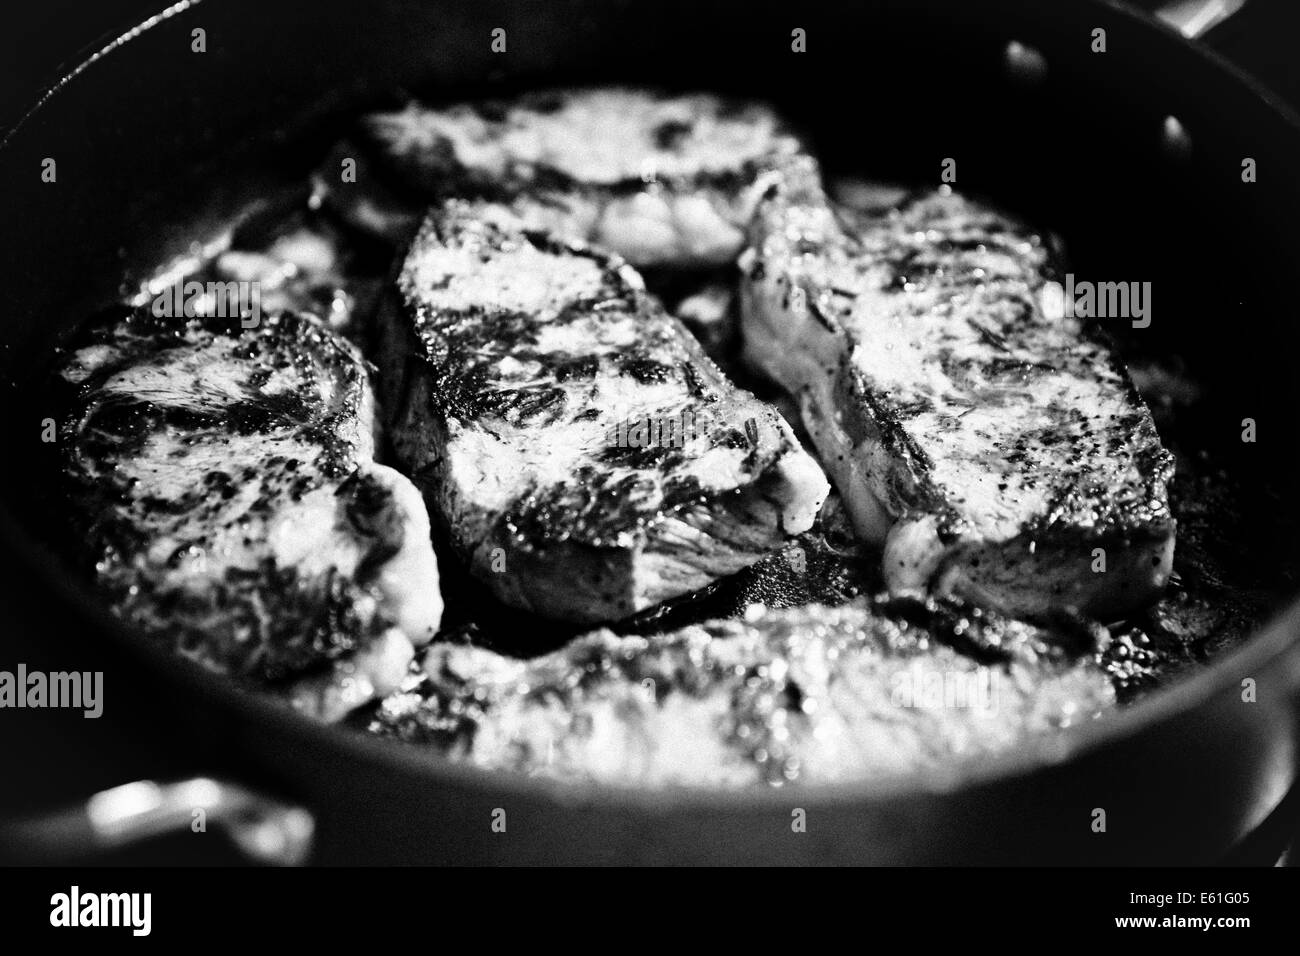 Le steak grillé boeuf viande cuite pan fried close up Banque D'Images